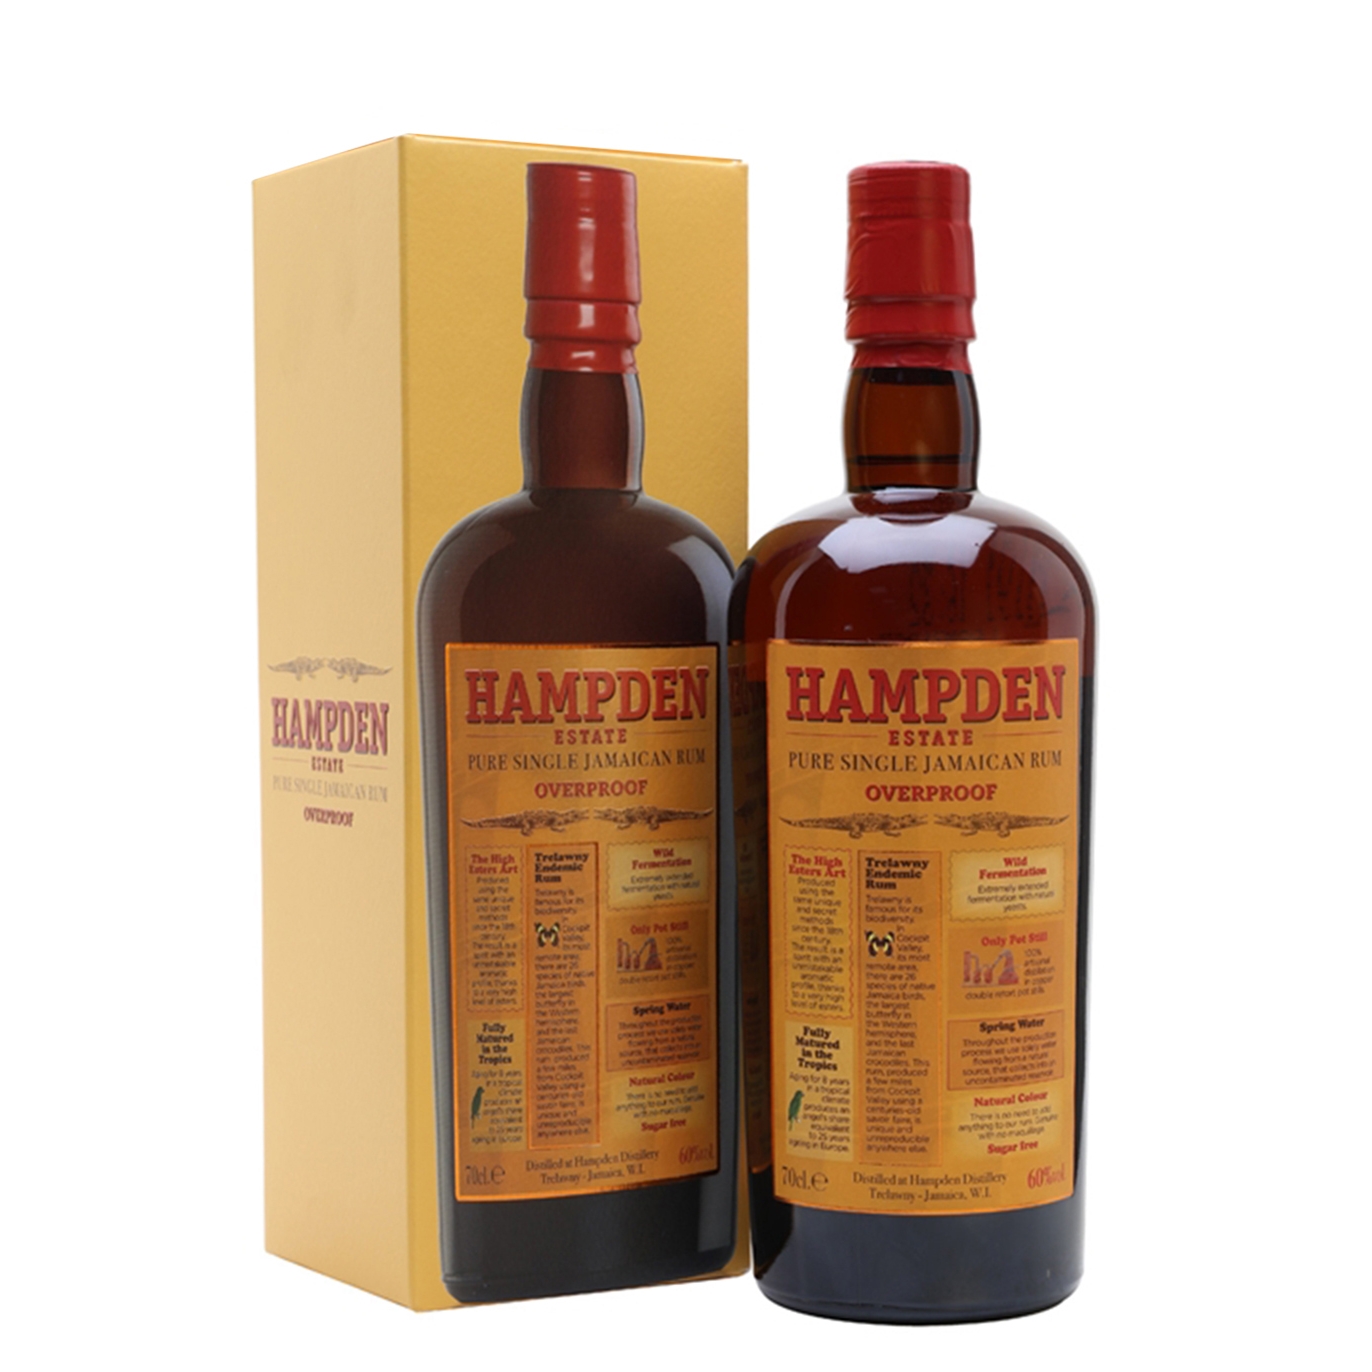 Hampden Estate Rum Overproof Pure Single Jamaican Rum